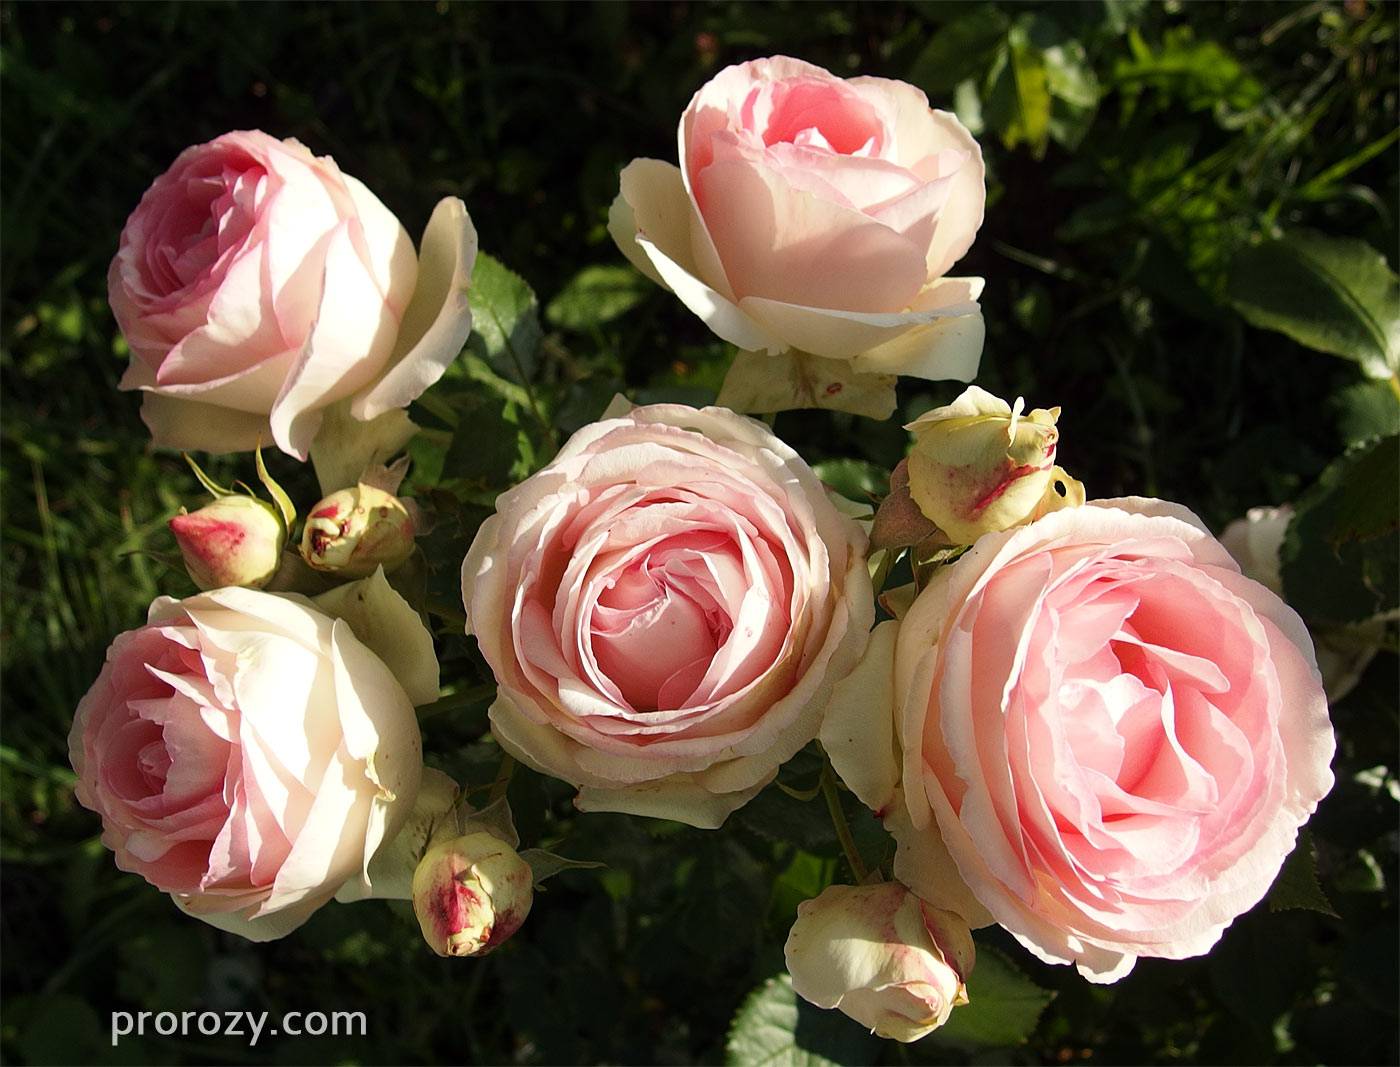 Королевский цветок — описание «титулованной» розы пьер де ронсар